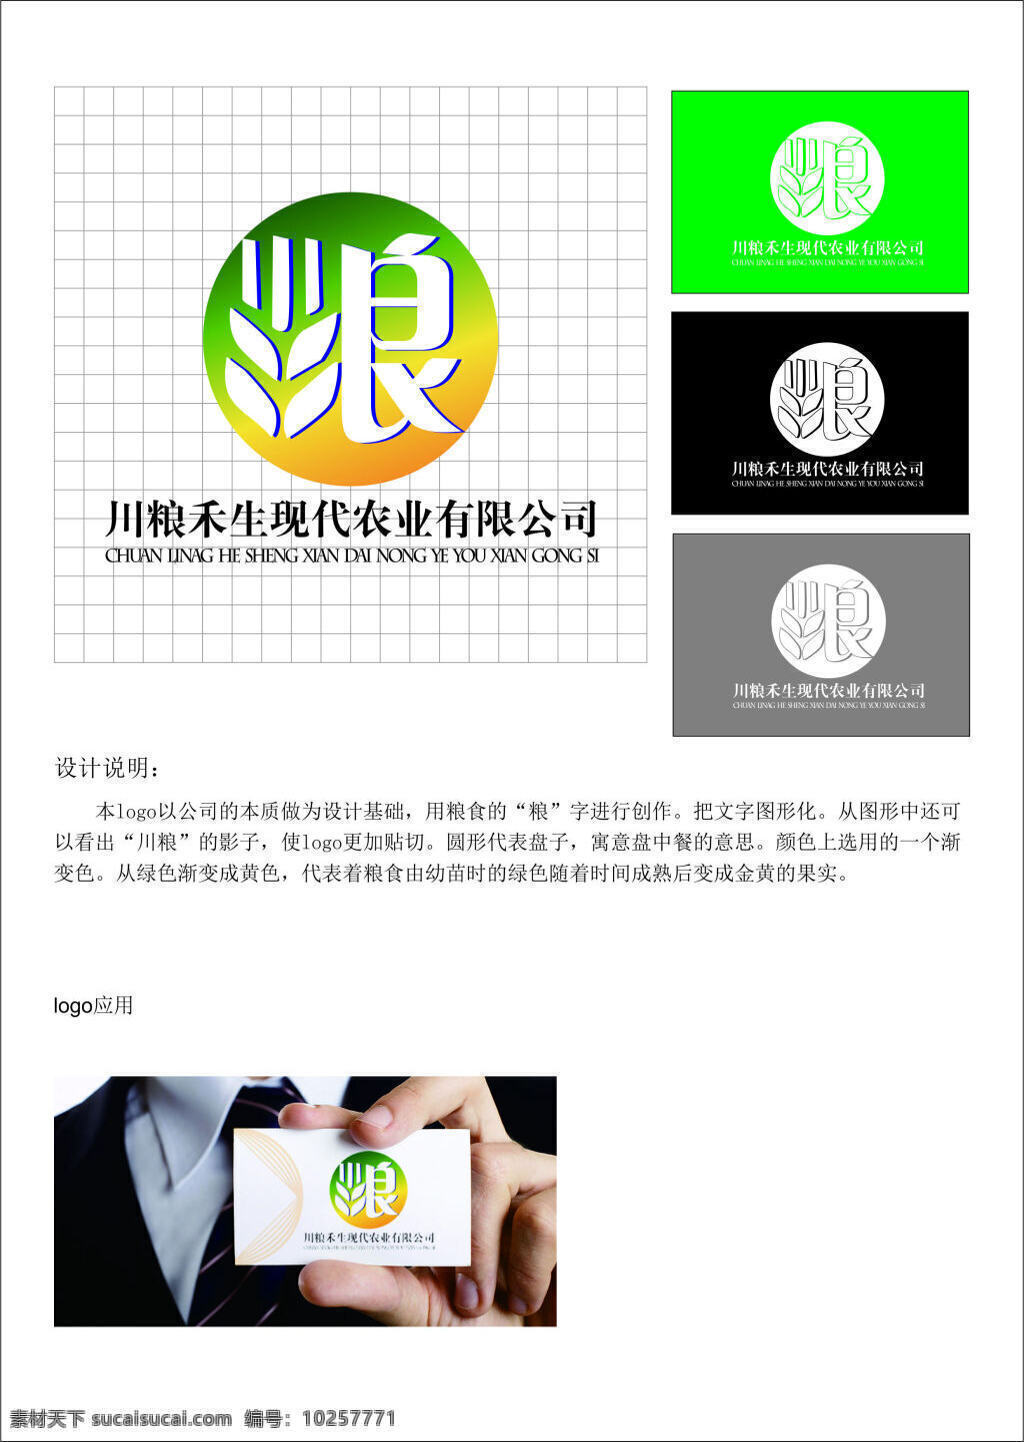 川 粮 禾 生 logo 绿色 粮食 标志 黄绿色 农业有限公司